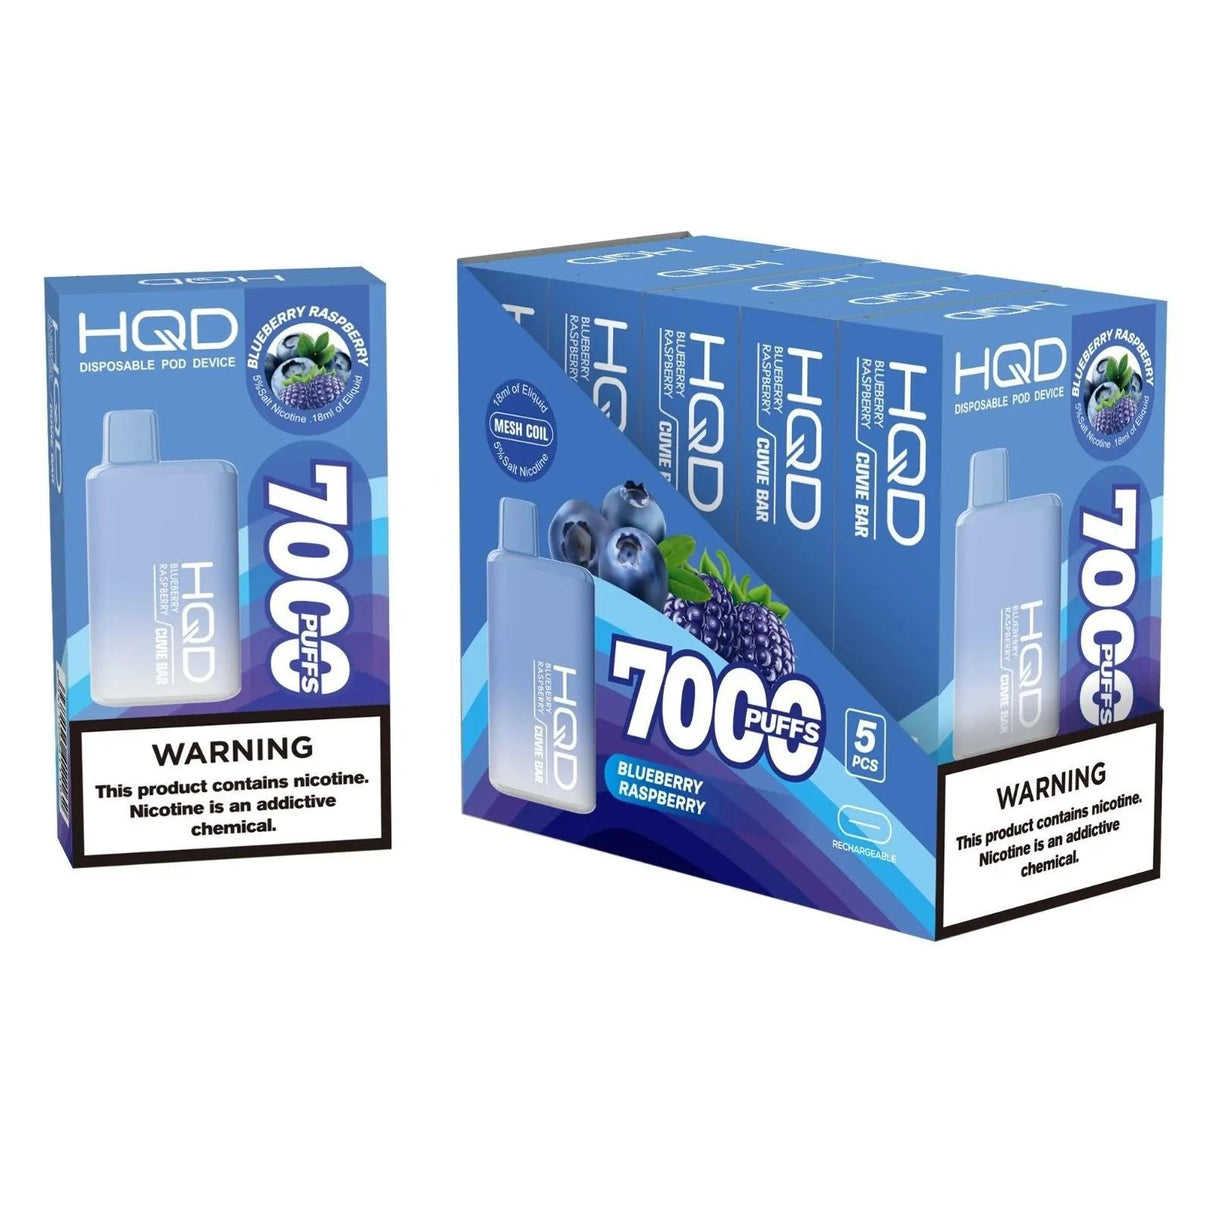 HQD Cuvie Bar 7000 Puffs Disposable Vape - 6 Pack-